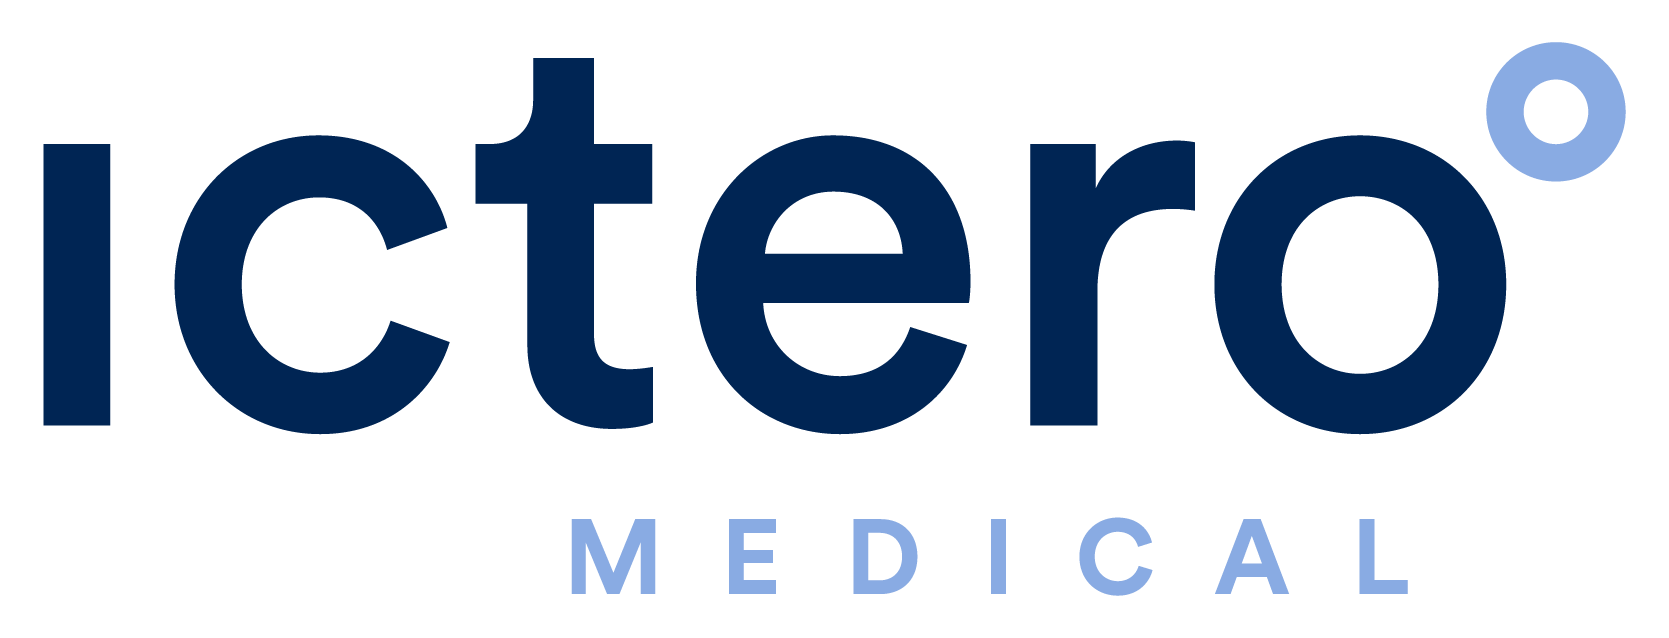 Ictero Logo